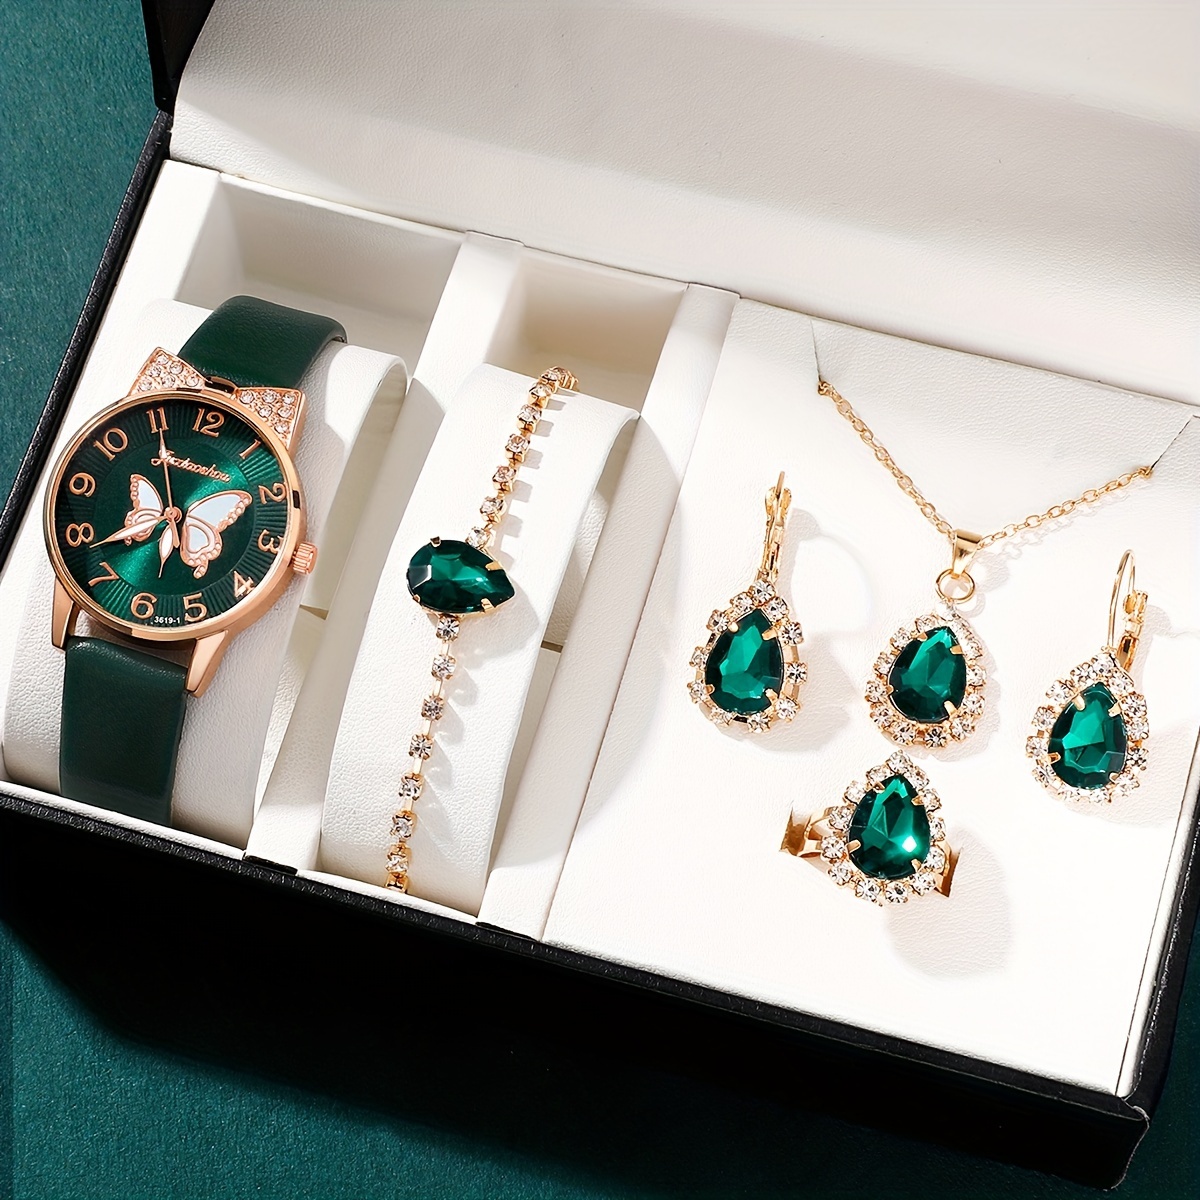 

6pcs/set Women's Watch Elegant Butterfly Quartz Watch Luxury Rhinestone Analog Wrist Watch & Jewelry Set, Gift For Mom Her